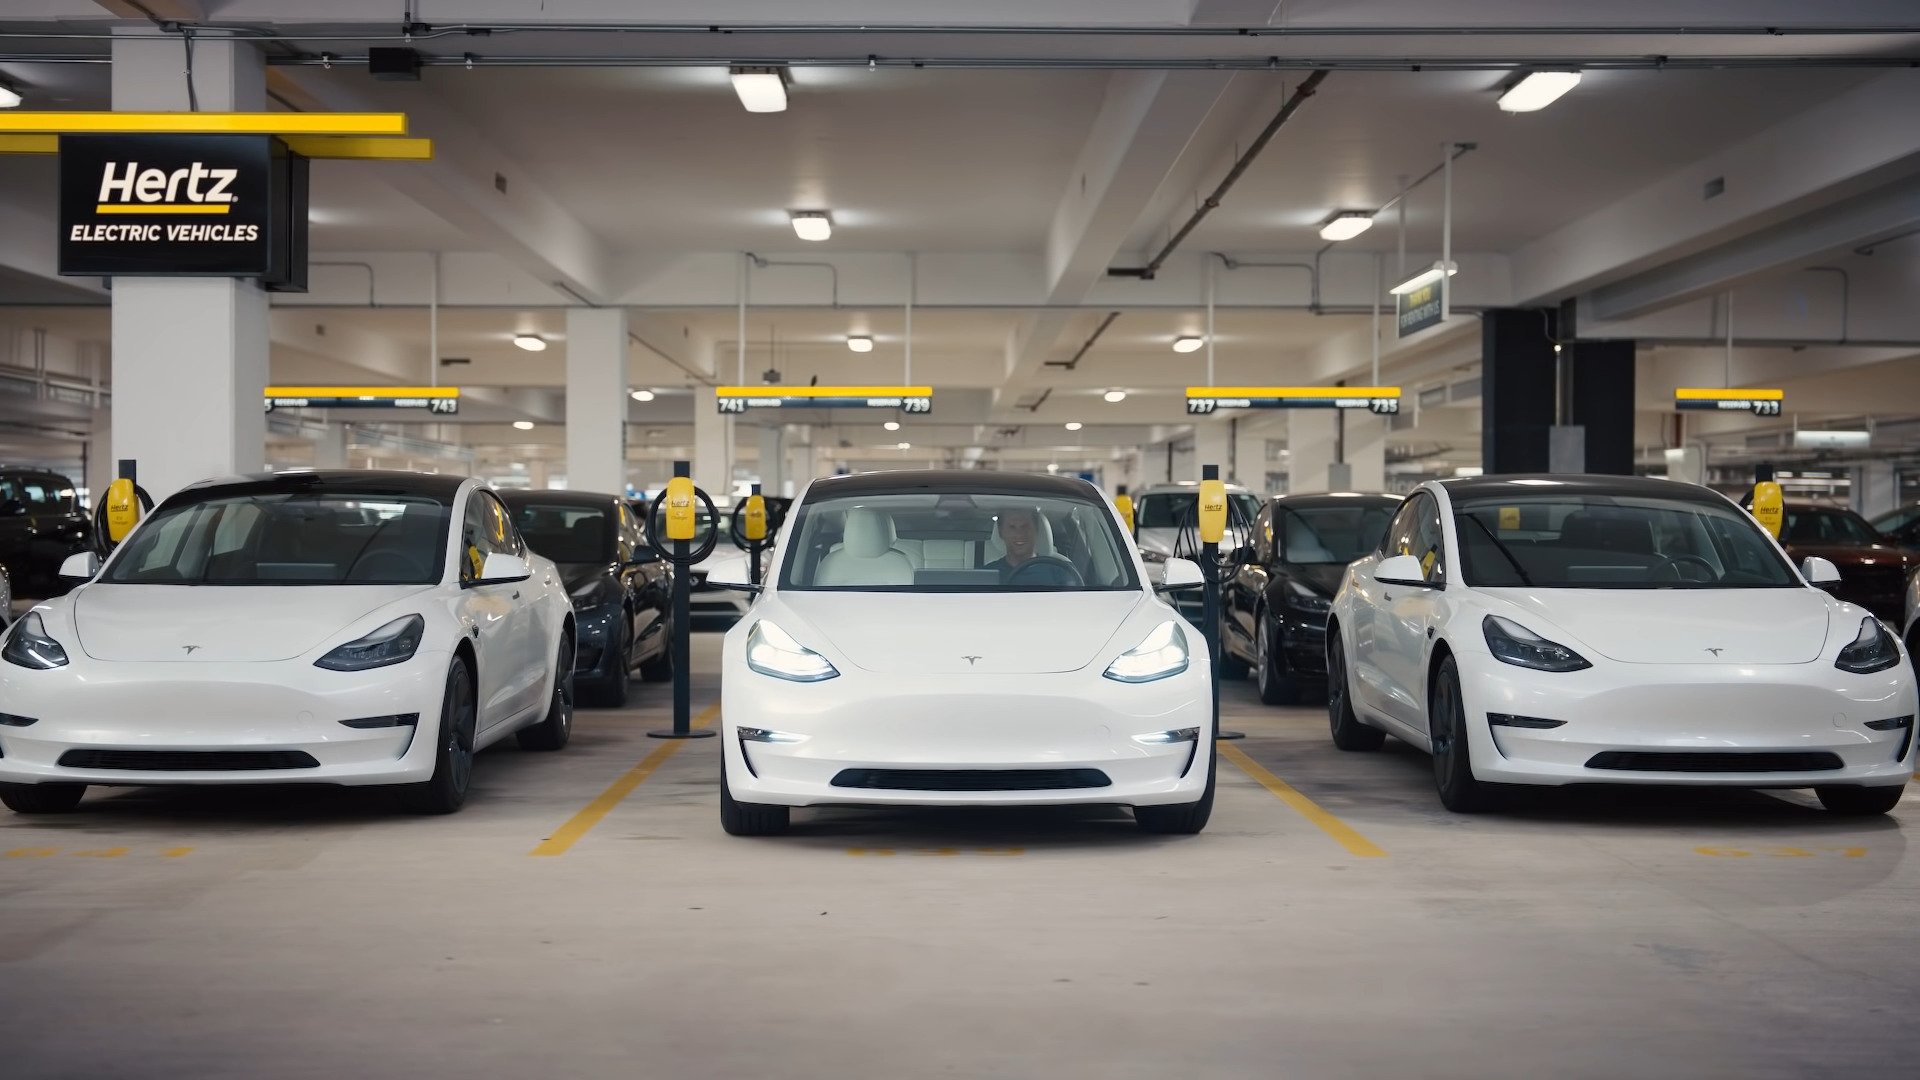 Les Etats Unis d’Amérique: Hertz compte commander 100.000 voitures du constructeur de véhicules électriques Tesla